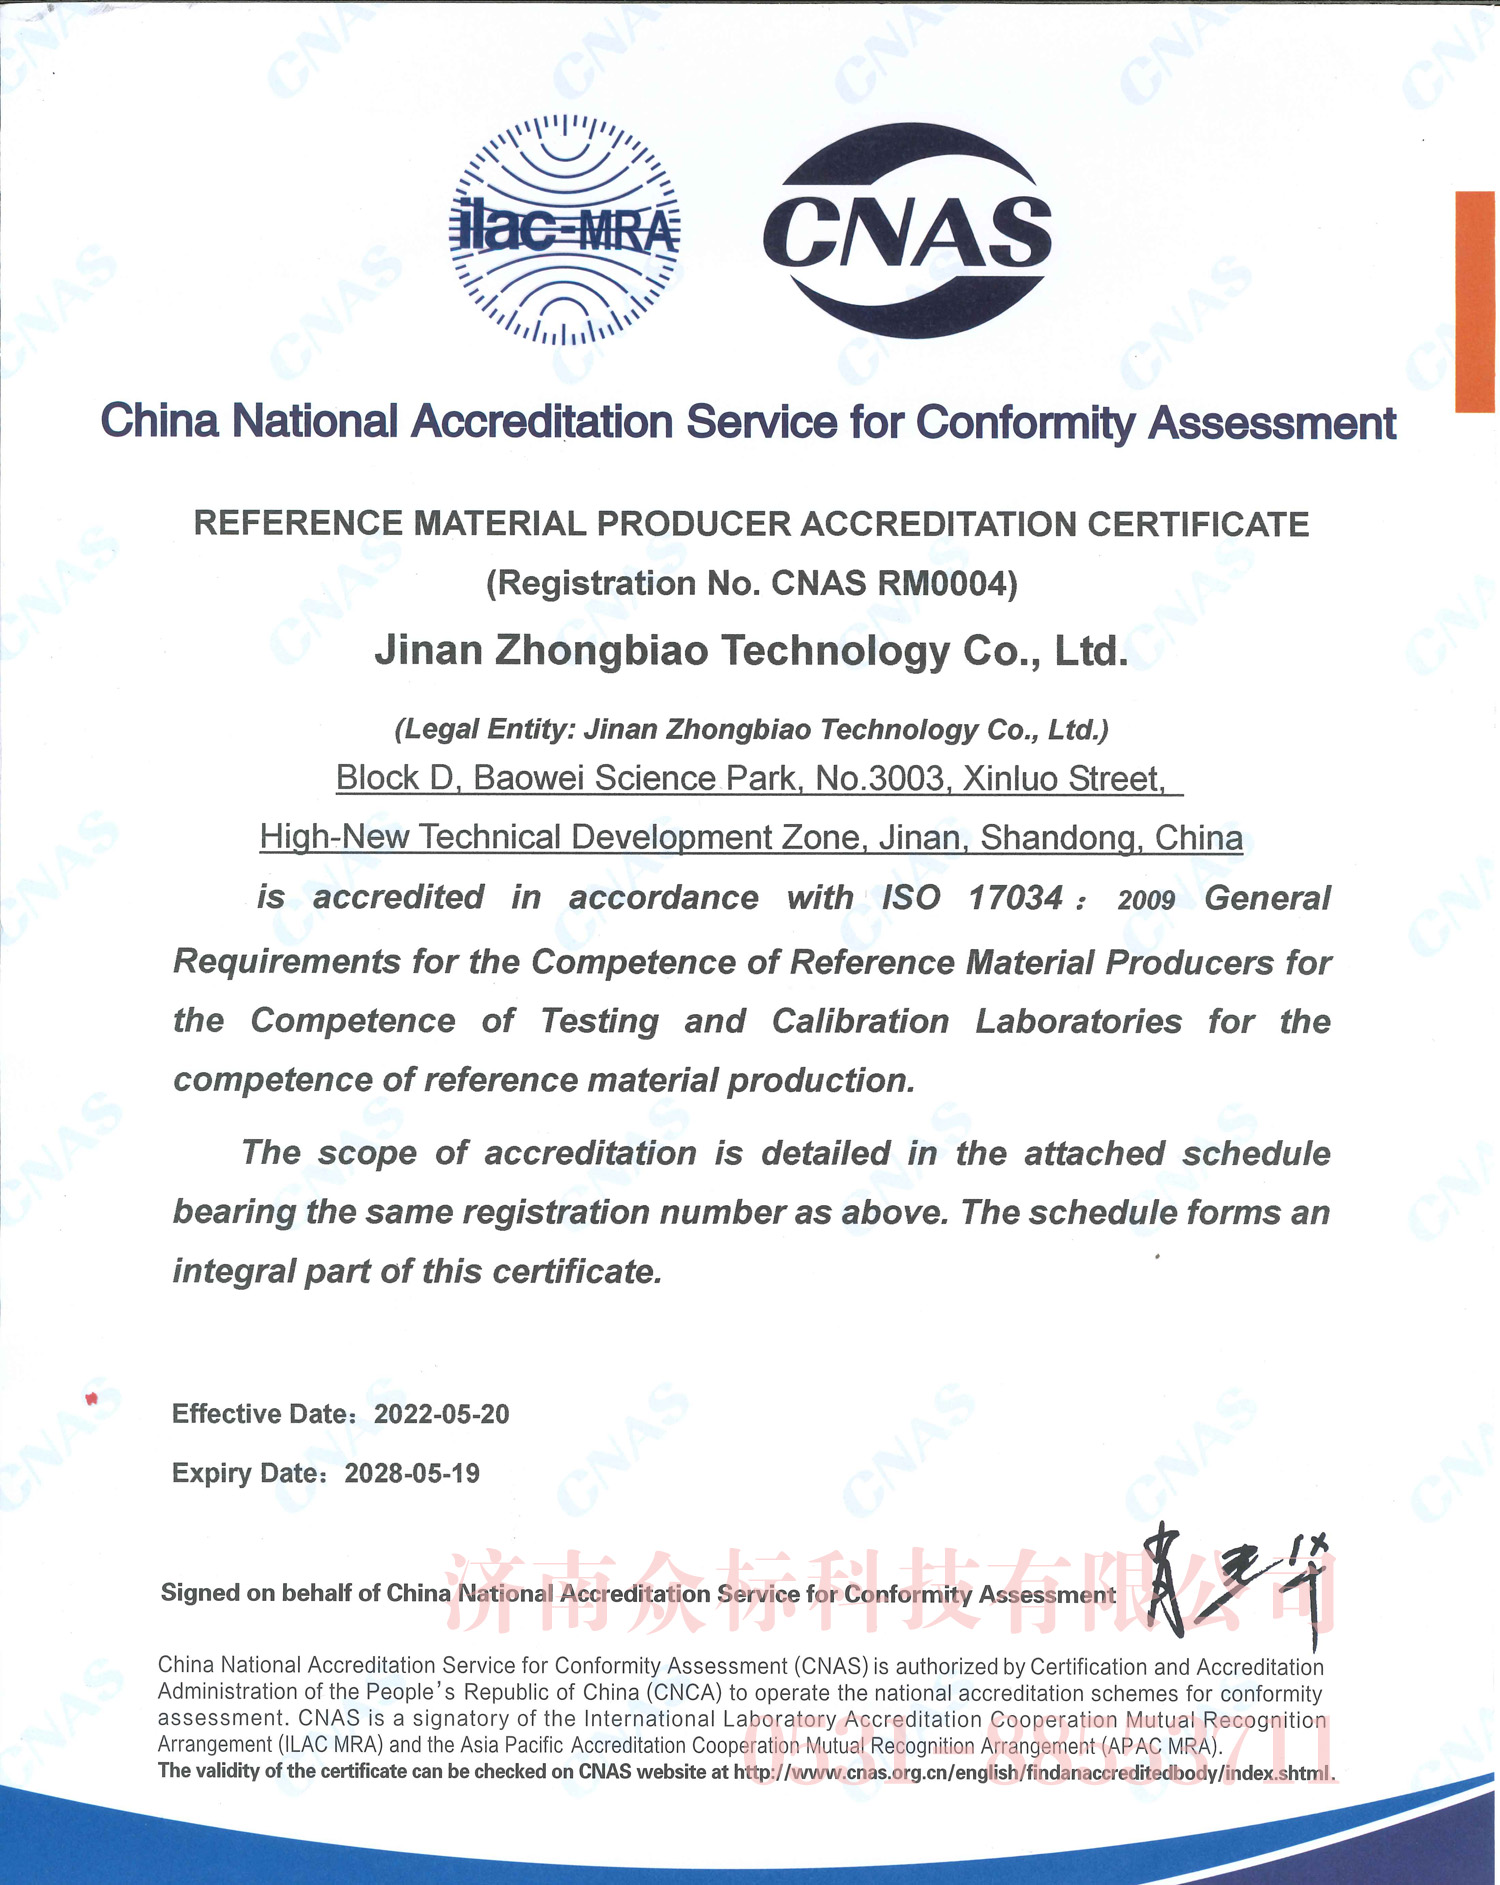 标准物质/标准样品生产者认可证书CNAS RM0004  英文版